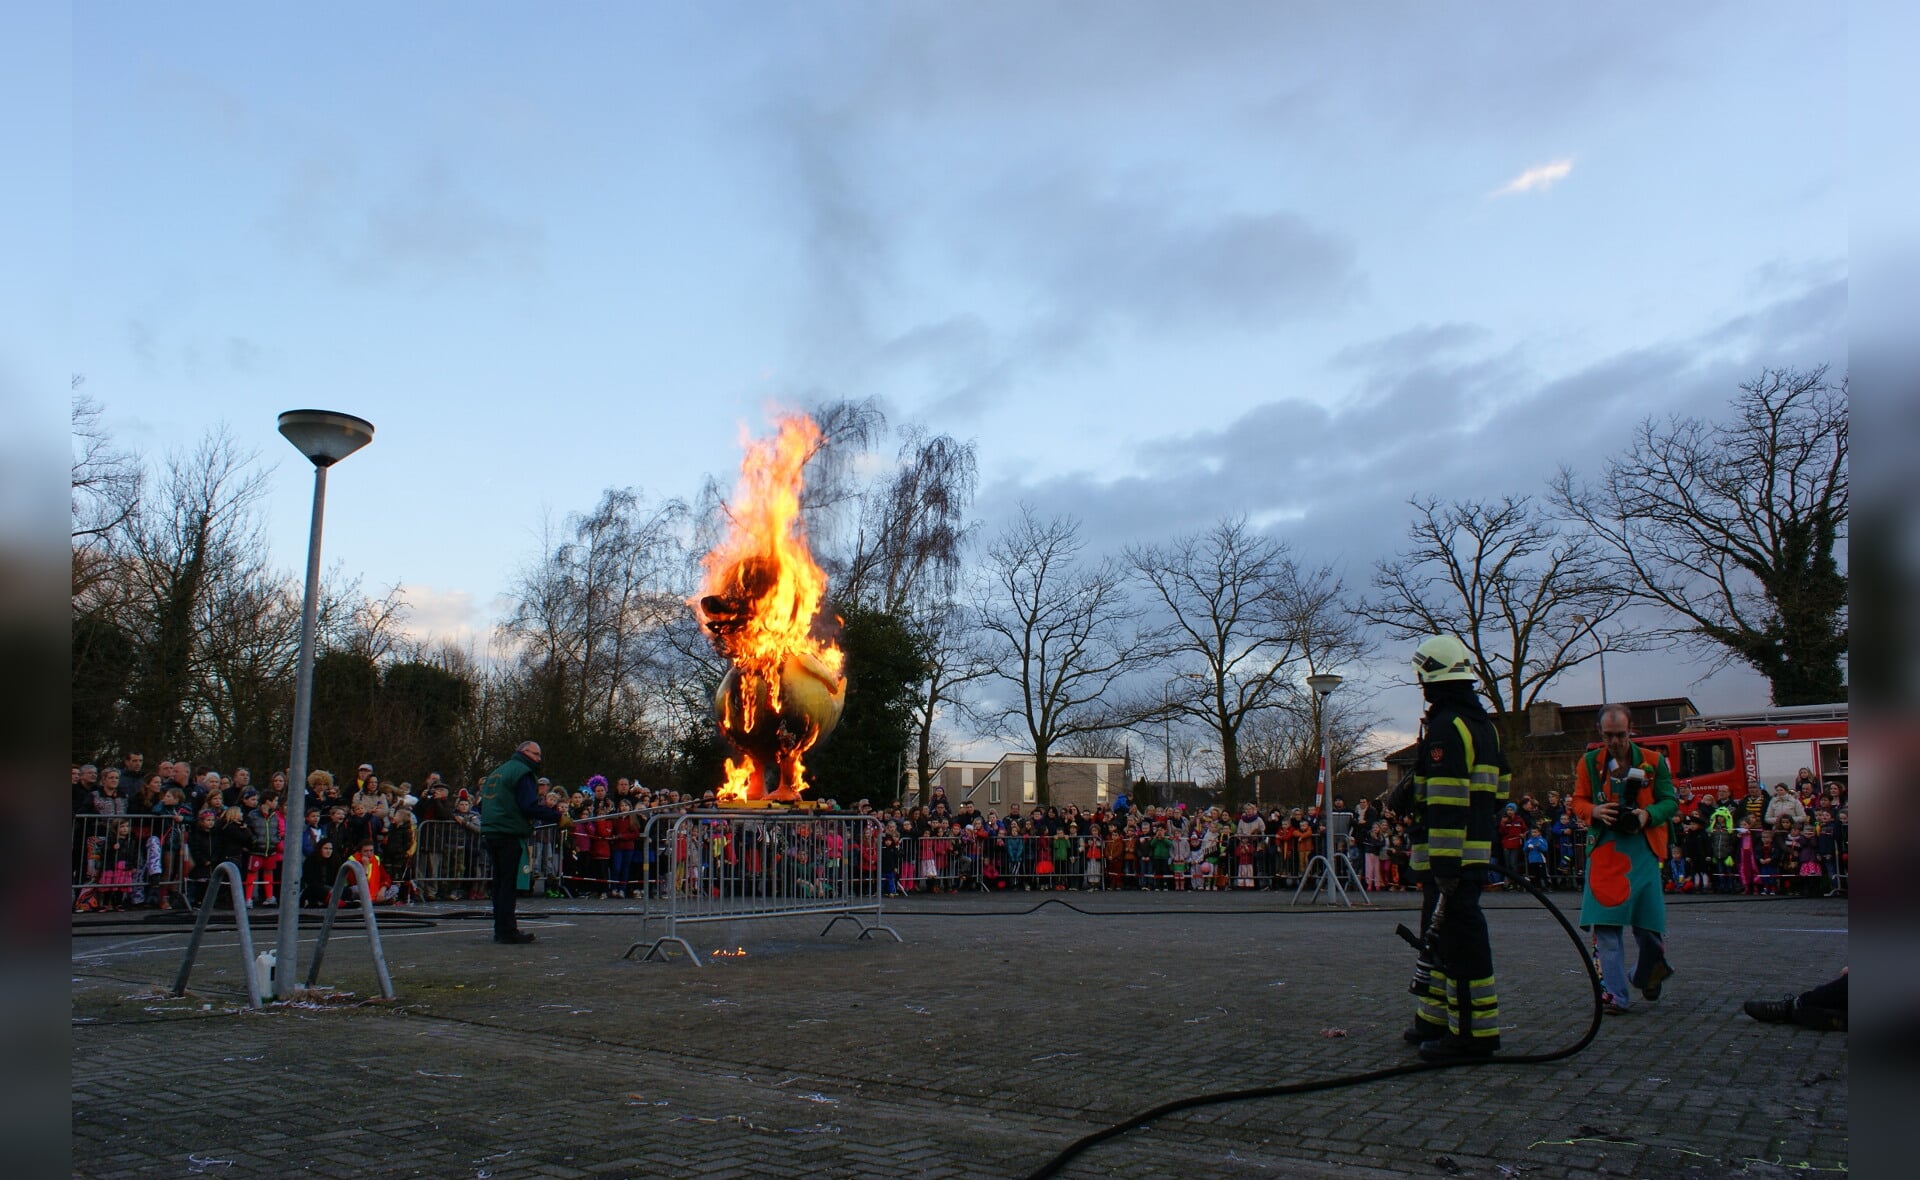 De Boxtelse carnavalseend staat in vuur en vlam. Het openbaar jeugdcarnaval is weer afgelopen. (Foto: Marc Cleutjens).